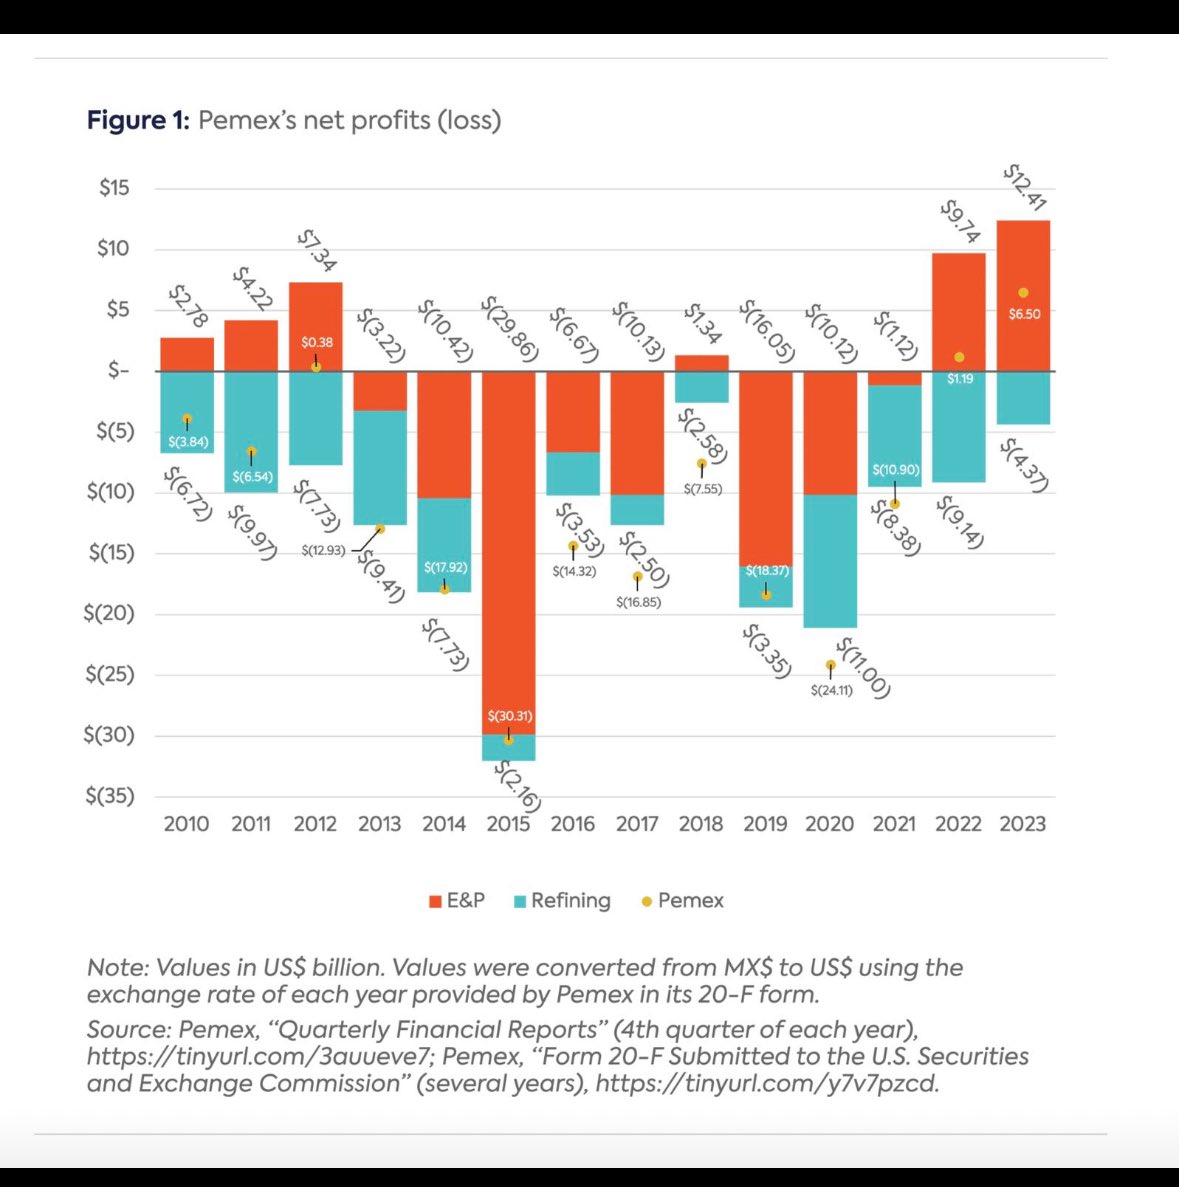 La idea de aumentar la refinación y reducir la exportación de petróleo se desmorona con esta gráfica. Los datos son claros: Pemex incurre en grandes pérdidas al refinar. Más que aumentar la refinación, necesitamos enfocarse en refinar menos, pero de manera más eficiente. ¡Ojo!